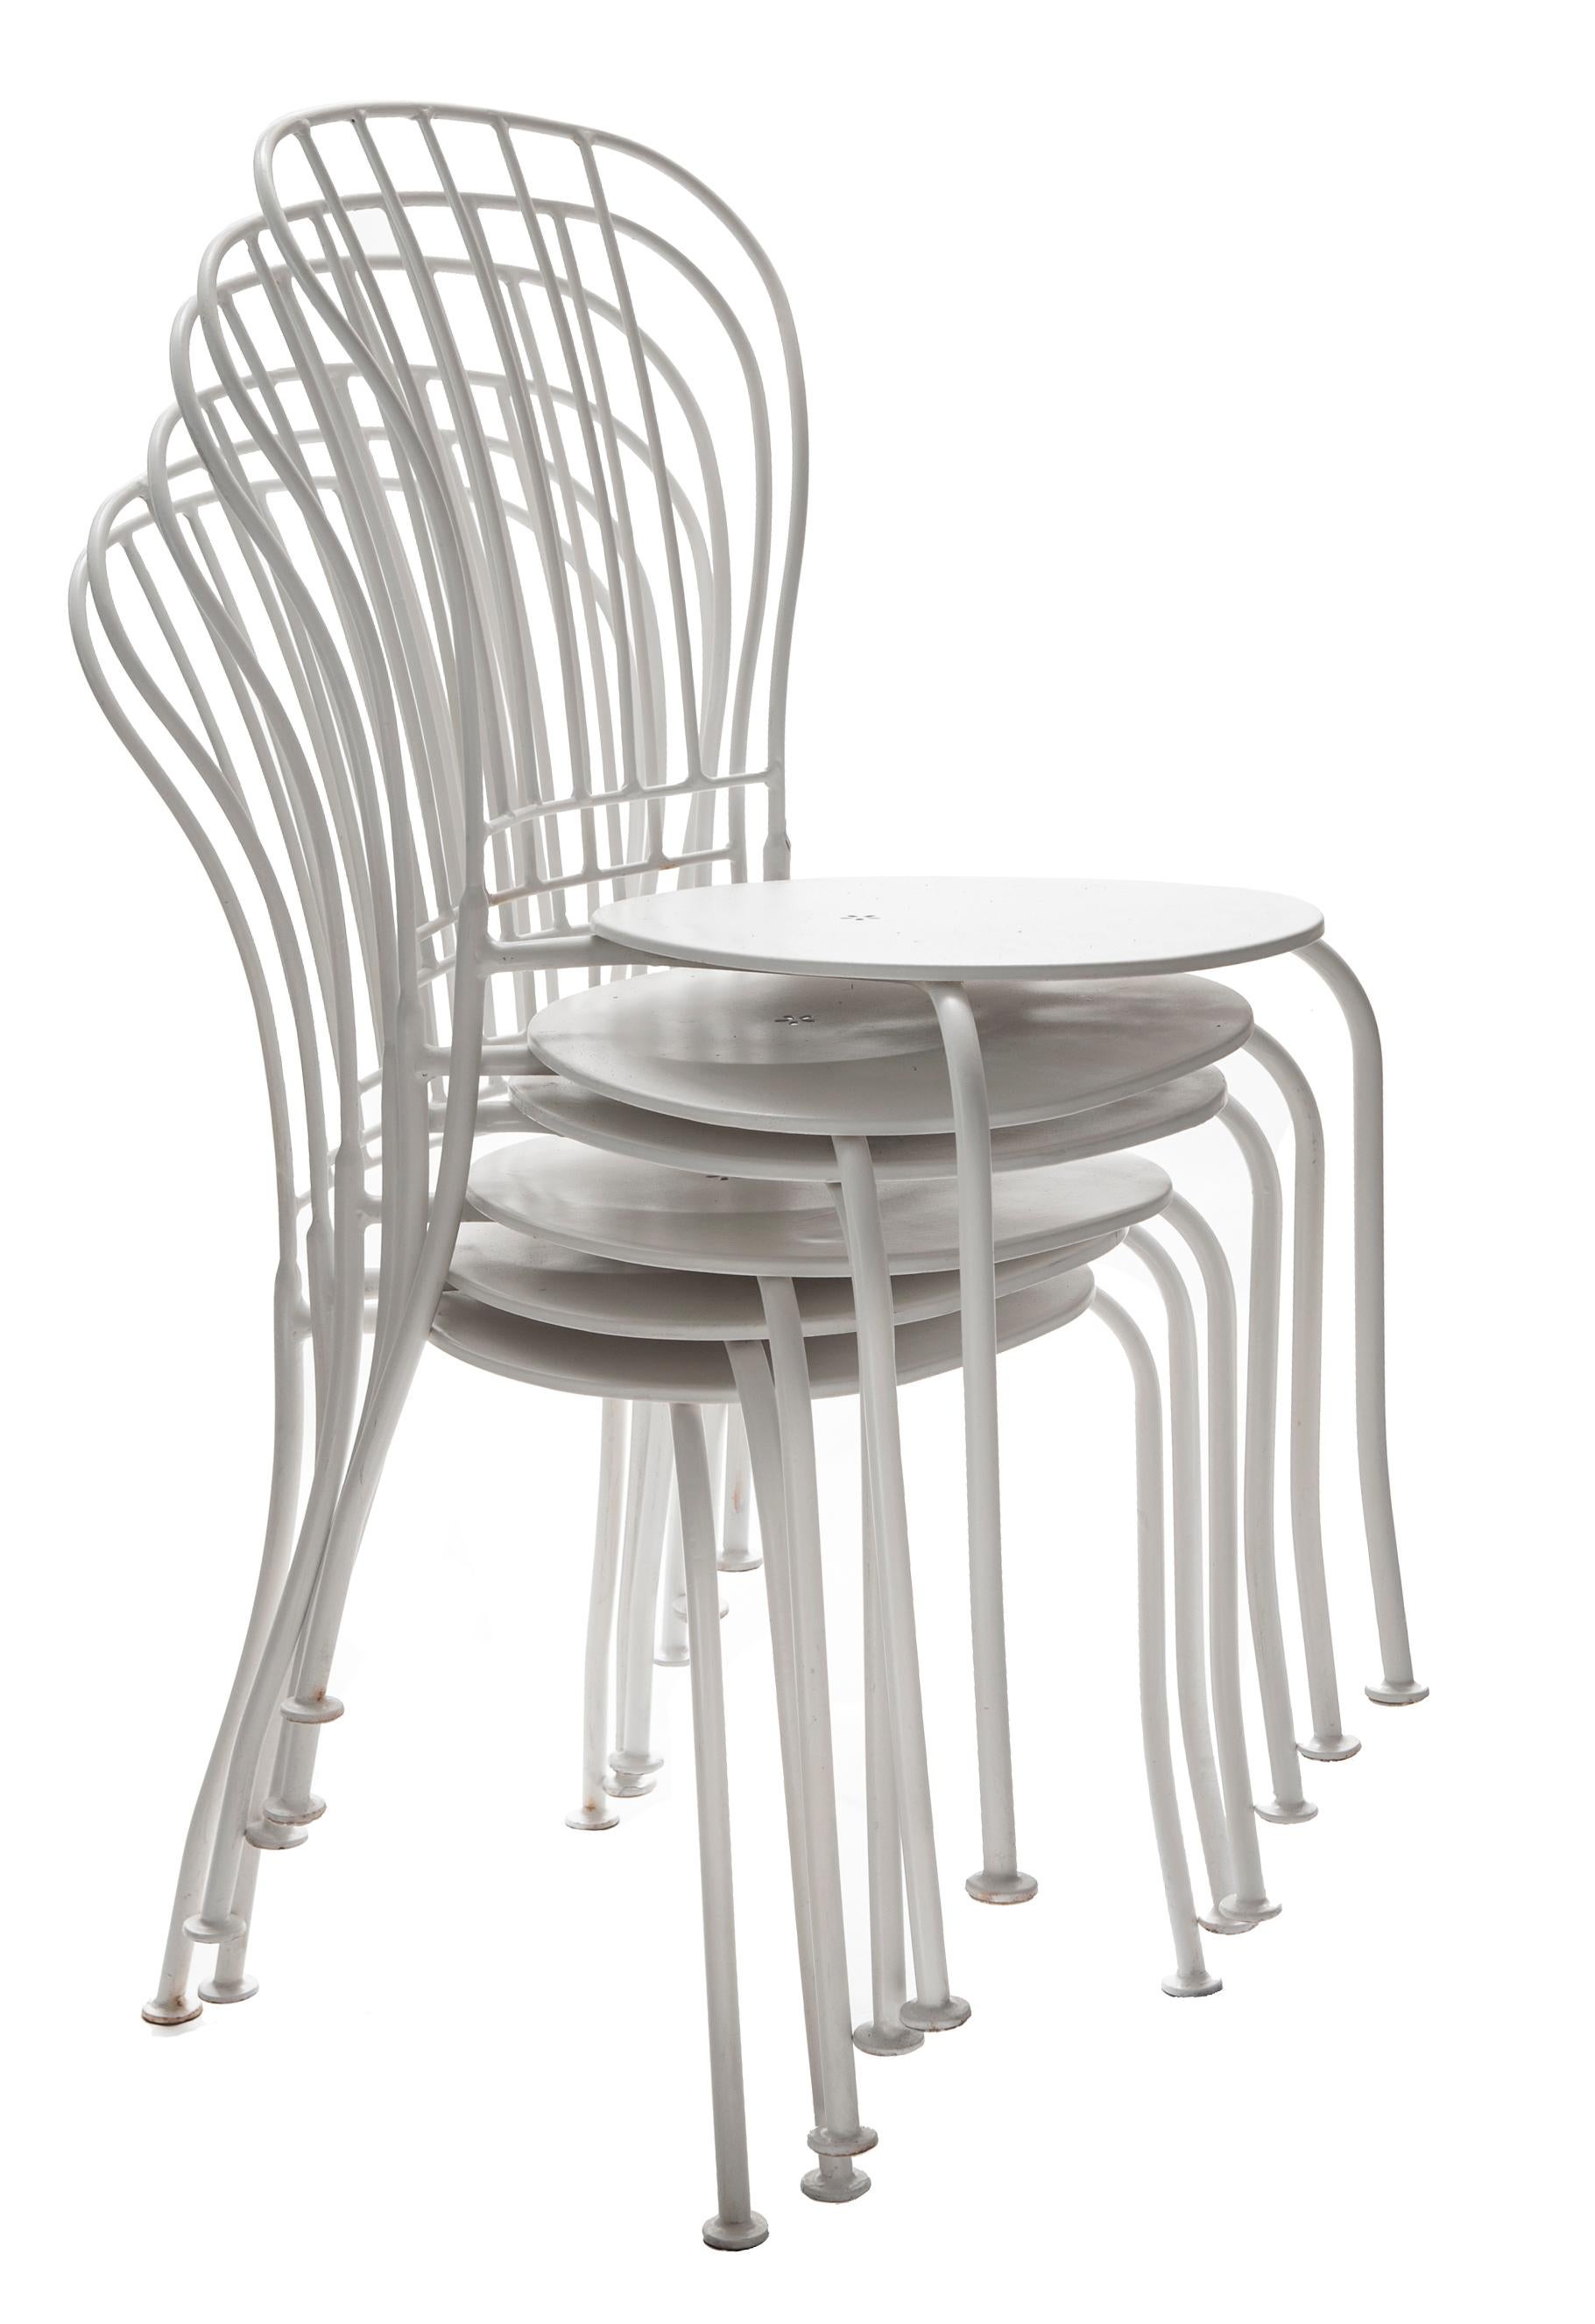 Ensemble tendance de six chaises de café/bistro empilables. Restauré avec une finition lisse en blanc satiné. Les chaises s'empilent pour un rangement facile.